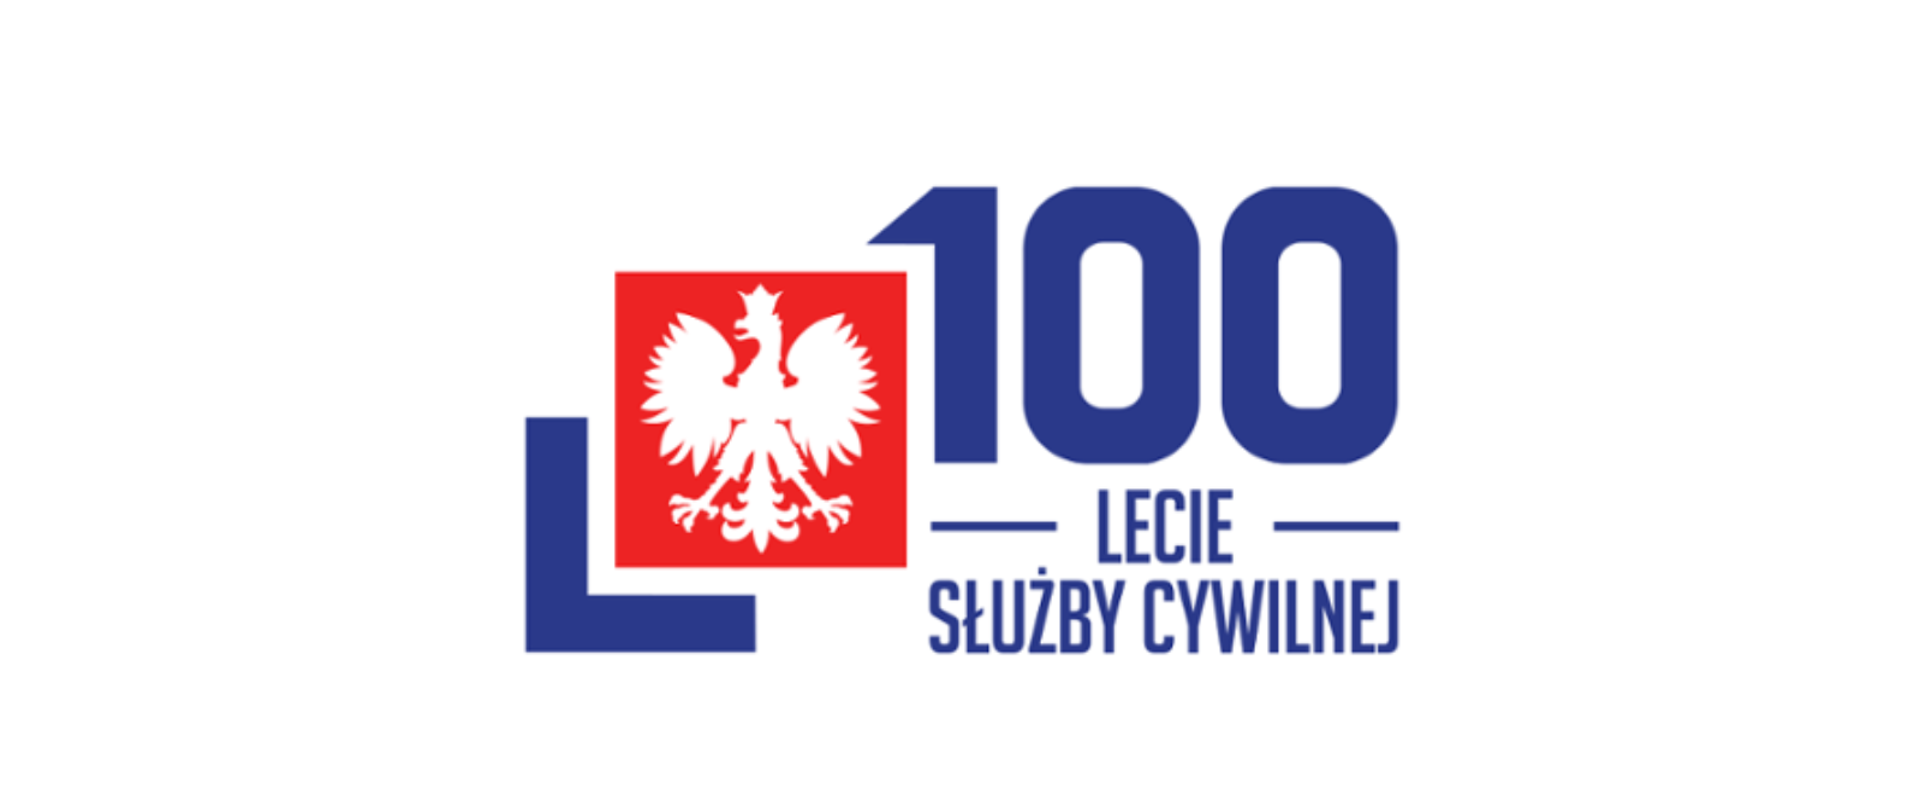 godło Polski napis 100 lecie służby cywilnej 